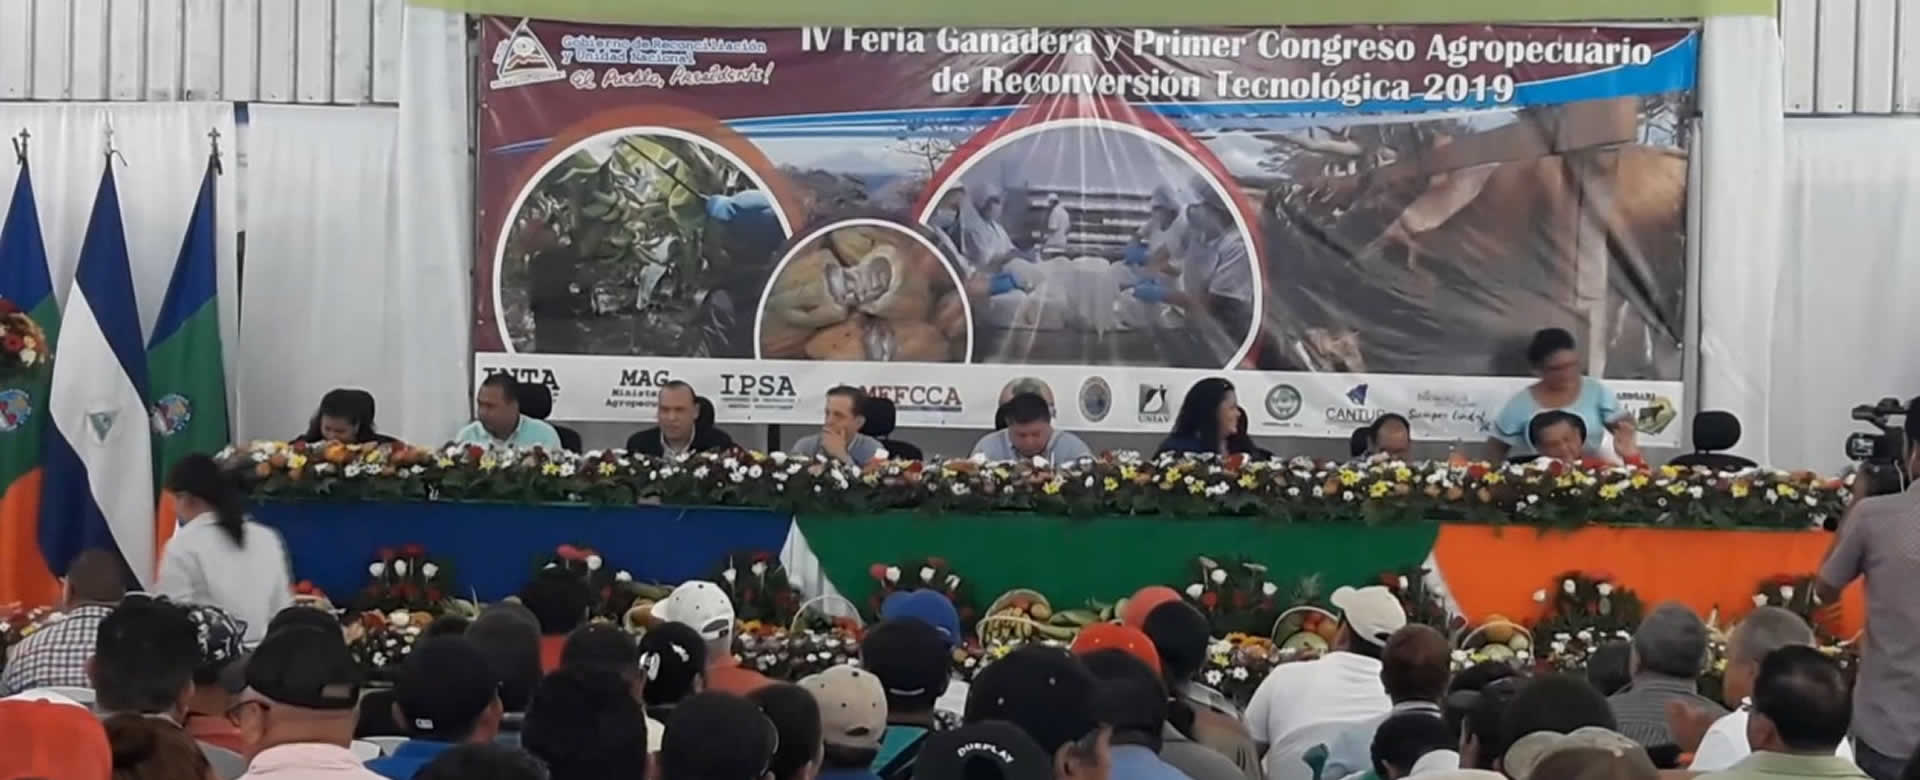 Culmina primer congreso agropecuario de Reconversión Tecnológica 2019 en Rivas